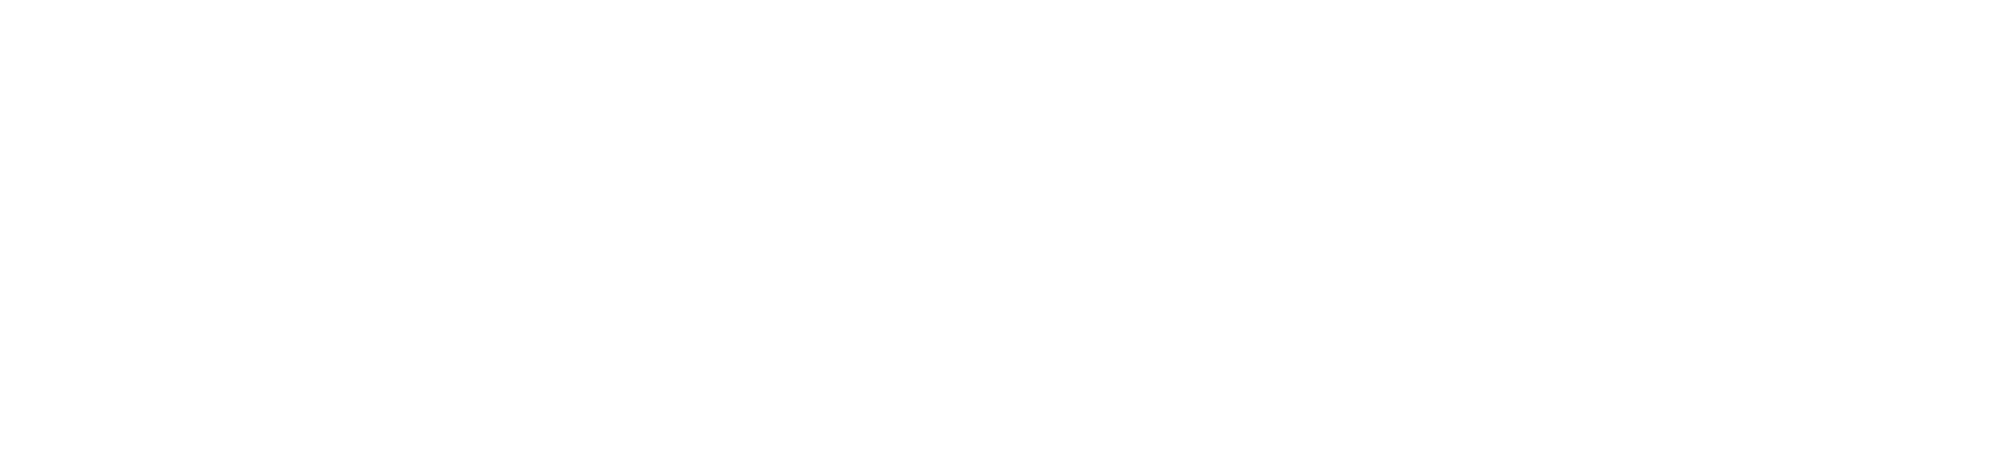 Klub Samsunga - smartfony i akcesoria